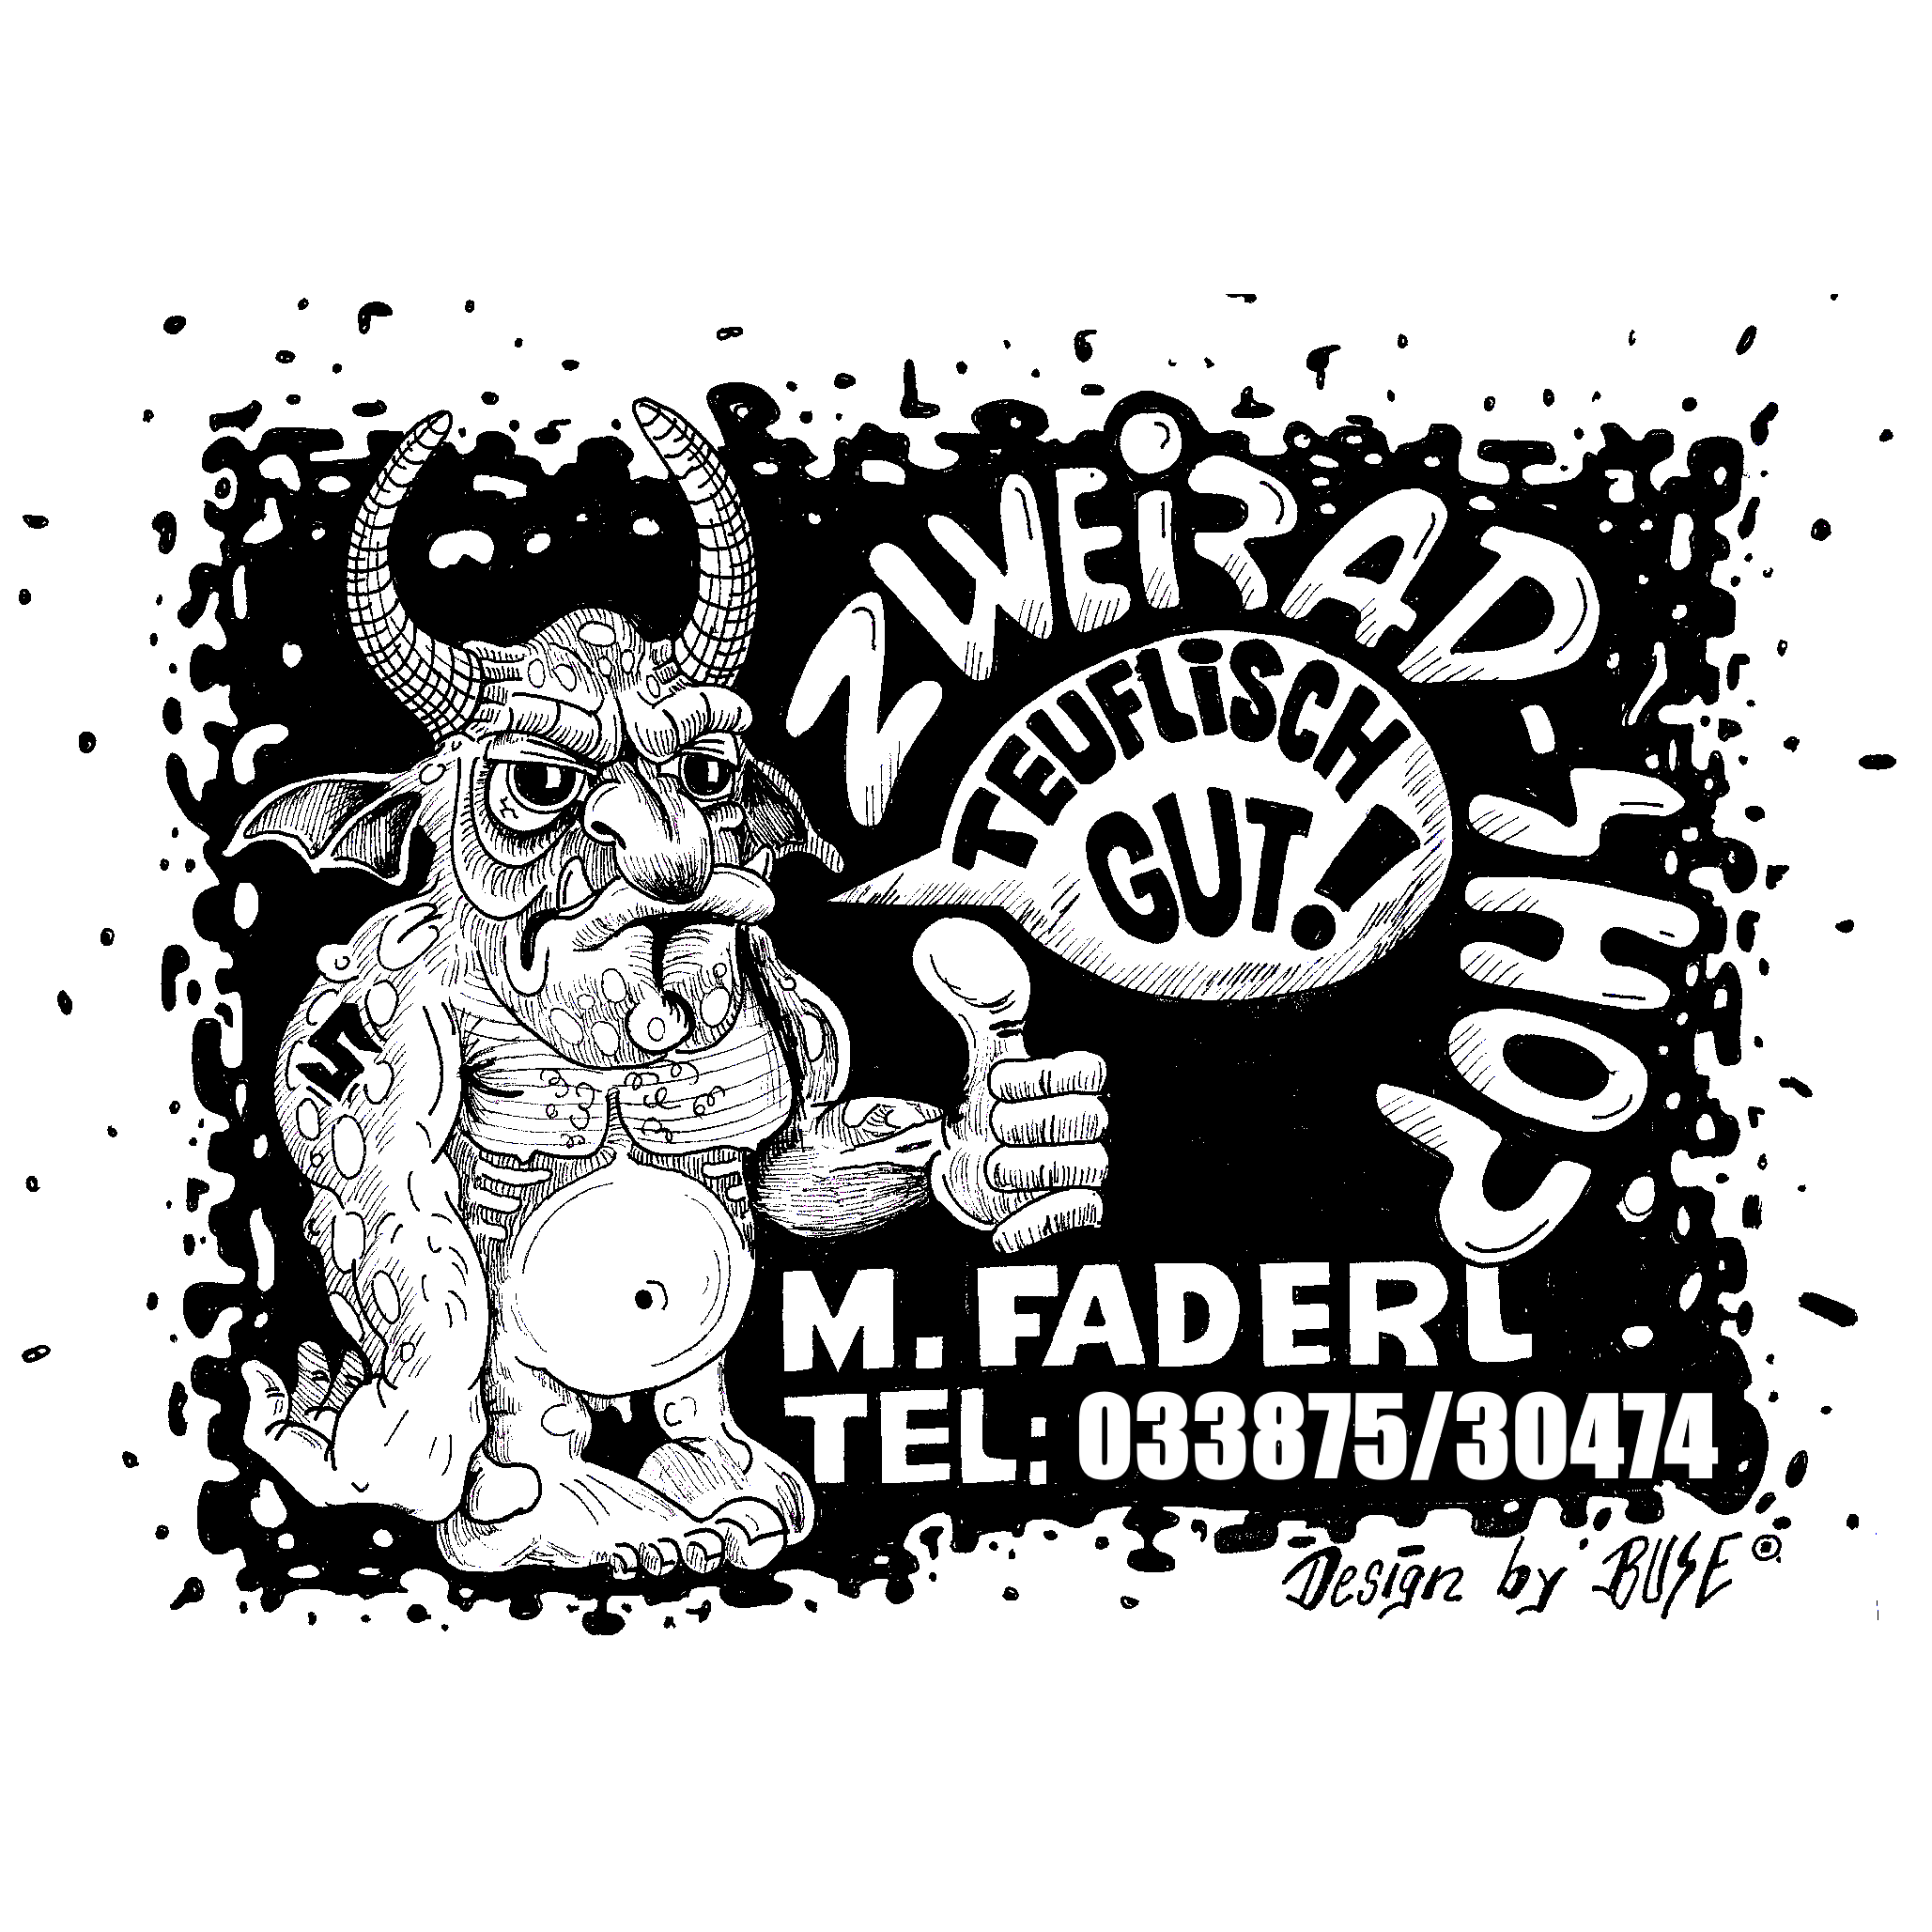 Zweirad-Shop Michael Faderl in Rhinow - Logo